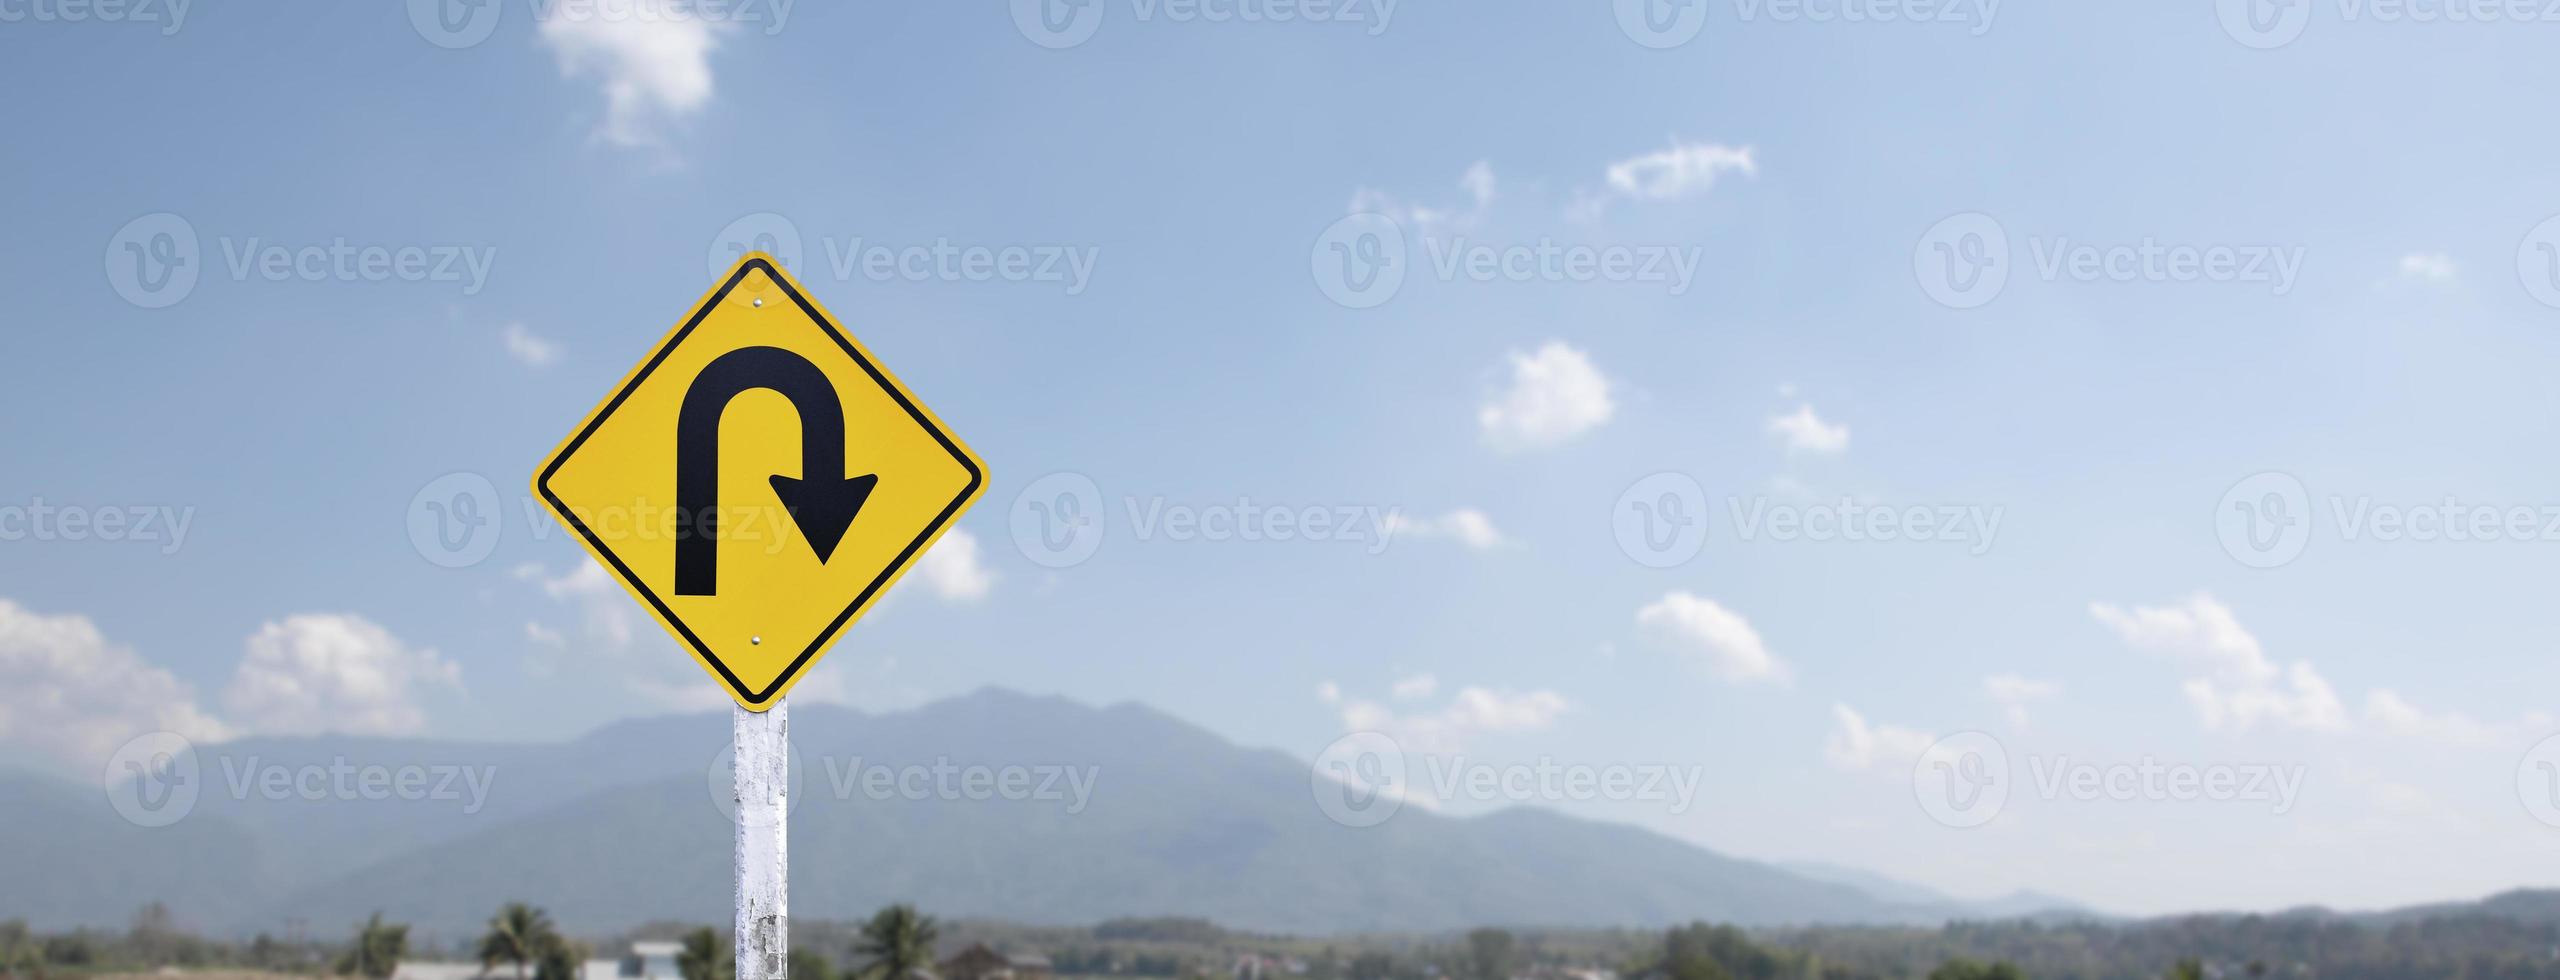 sinal de trânsito, vire à direita no poste de cimento ao lado da estrada rural com fundo azul nublado branco, copie o espaço. foto